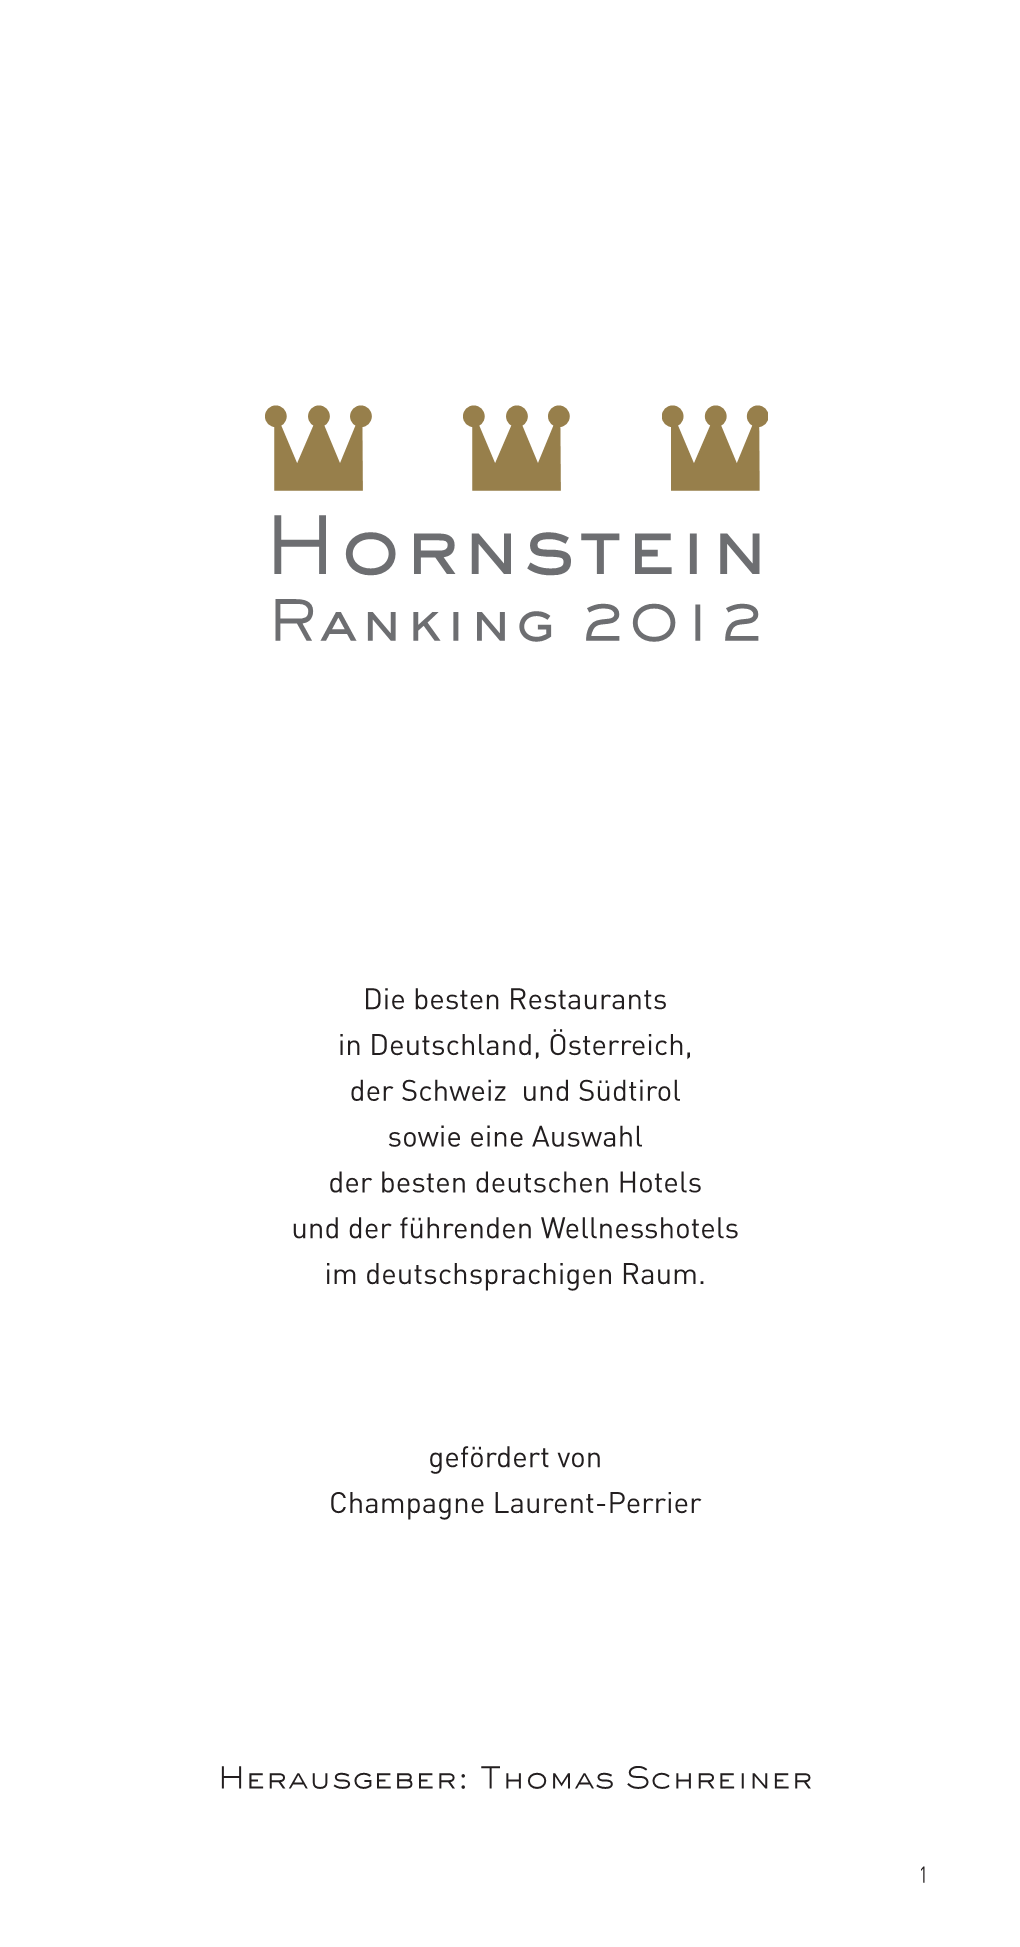 Hornstein Ranking 2012